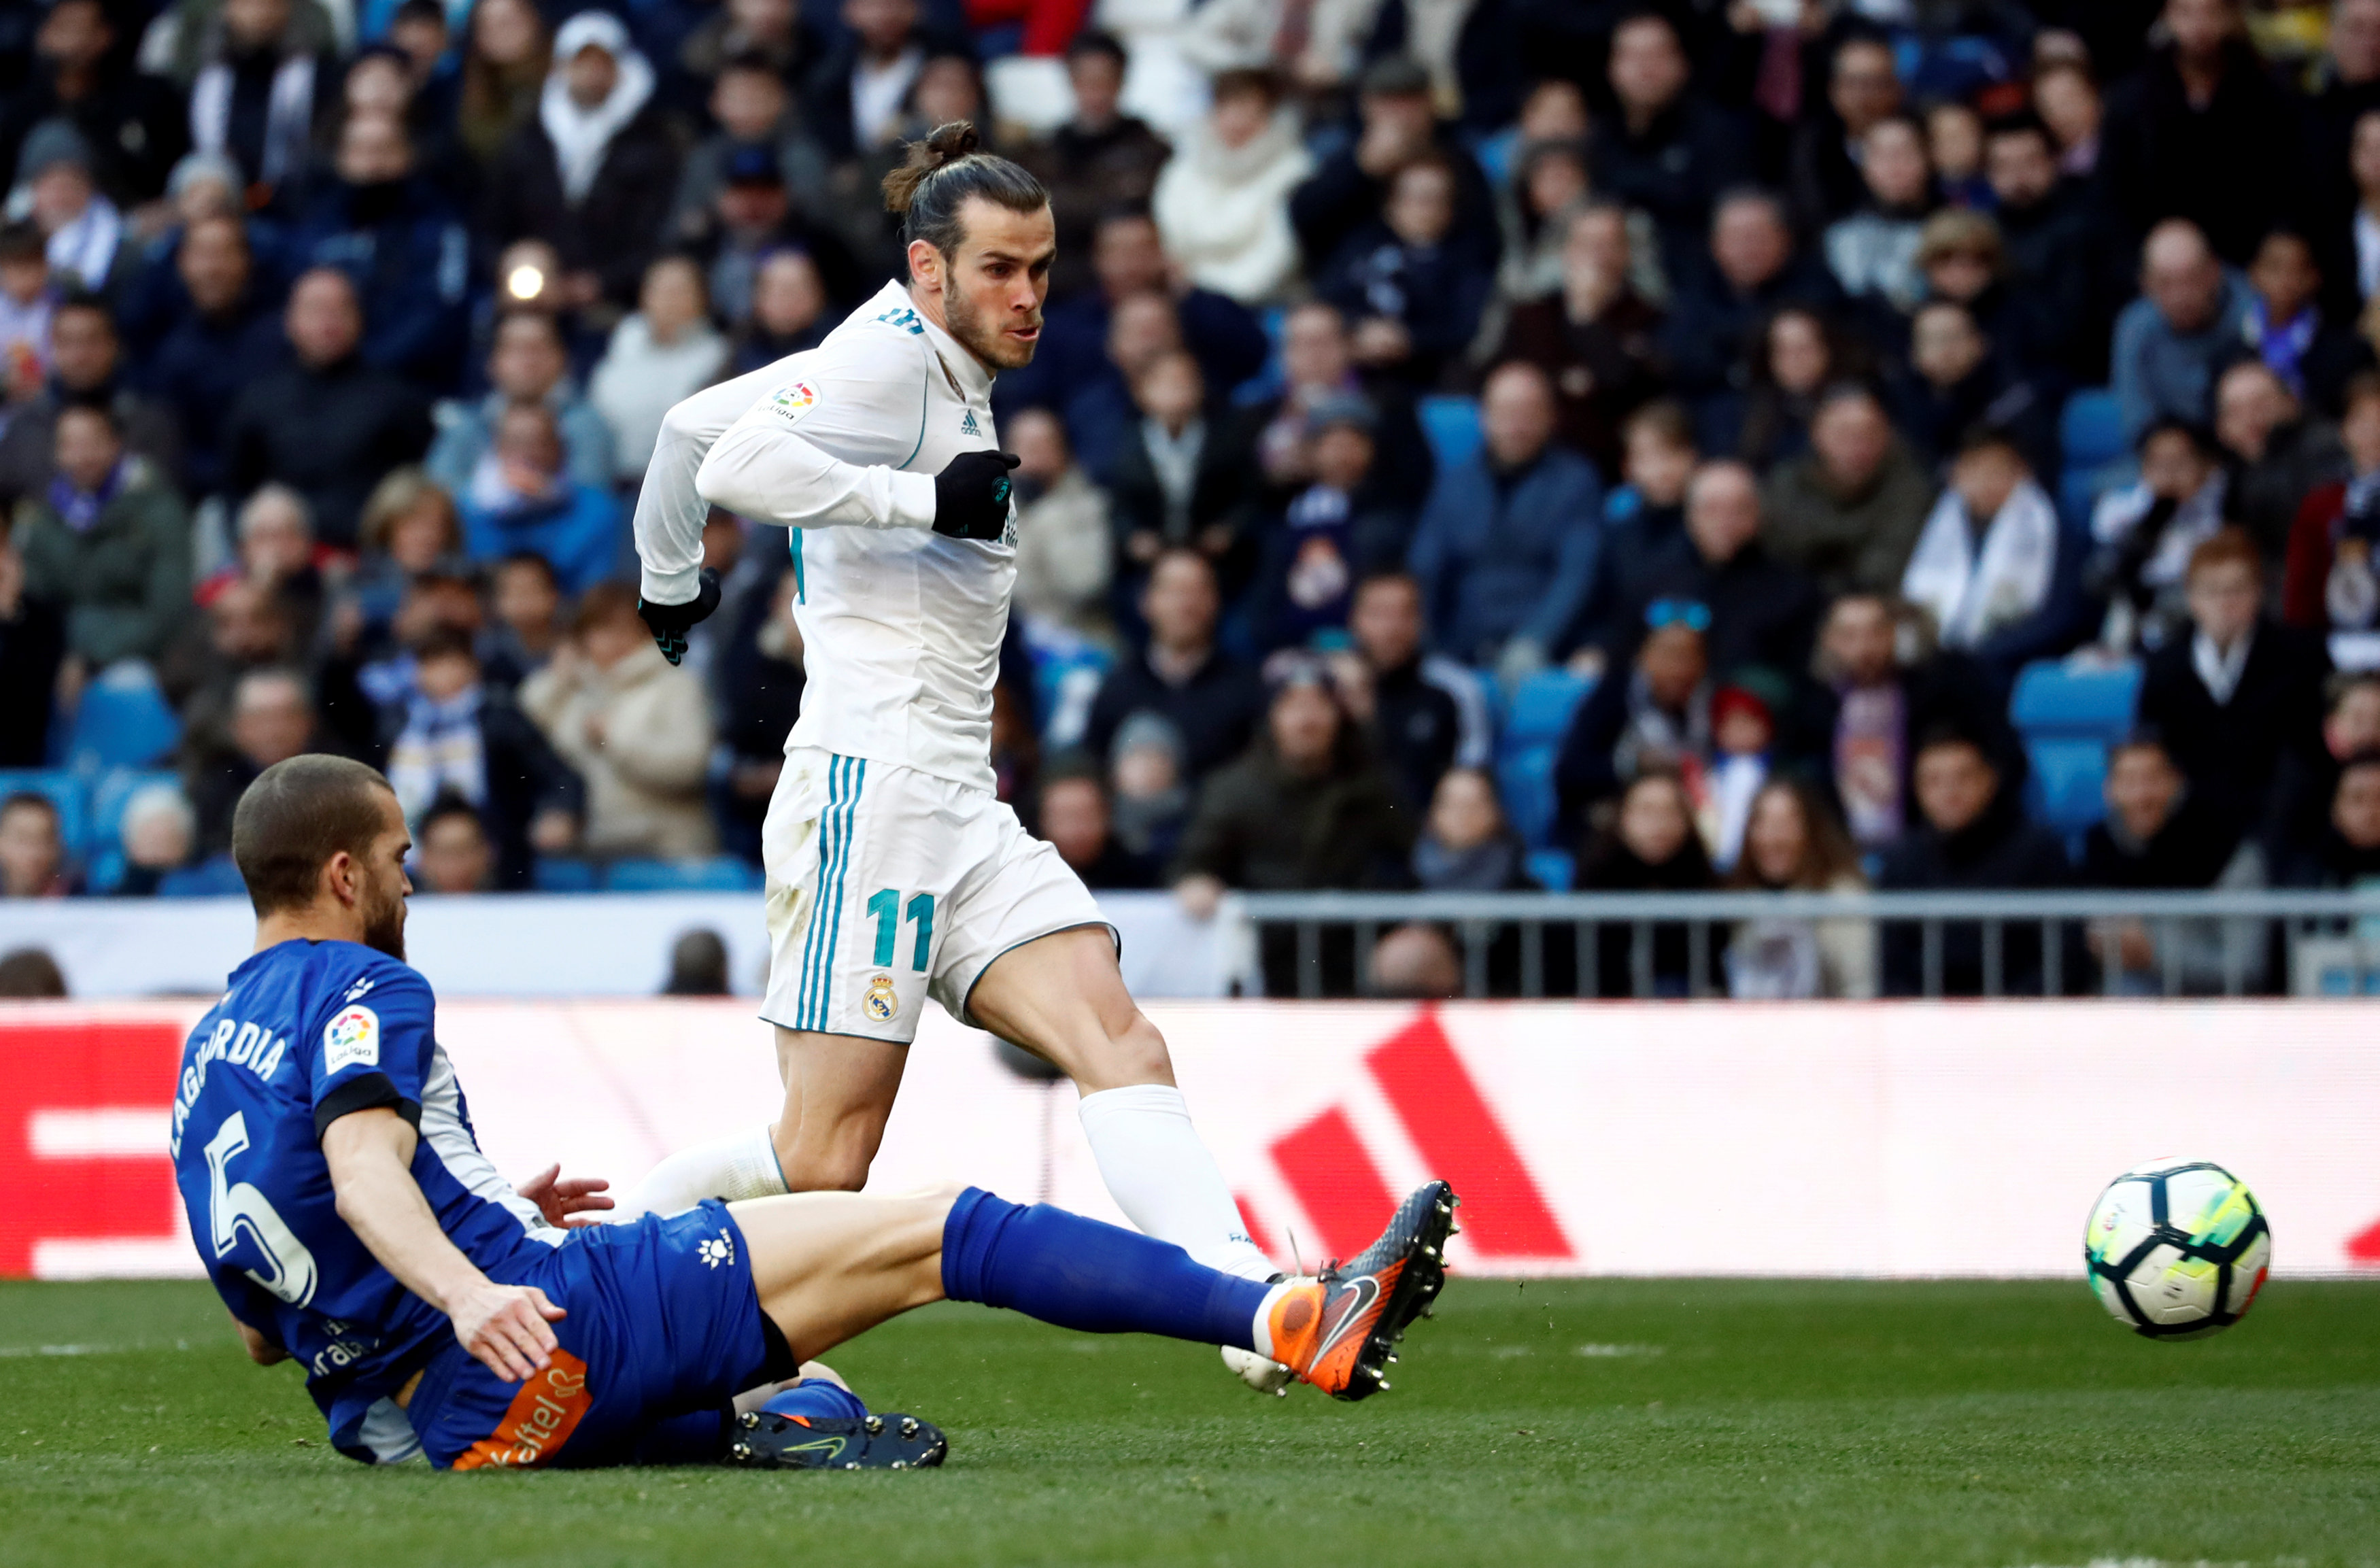 Pha dứt điểm nâng tỉ số lên 2-0 cho R.M của Bale. Ảnh: REUTERS